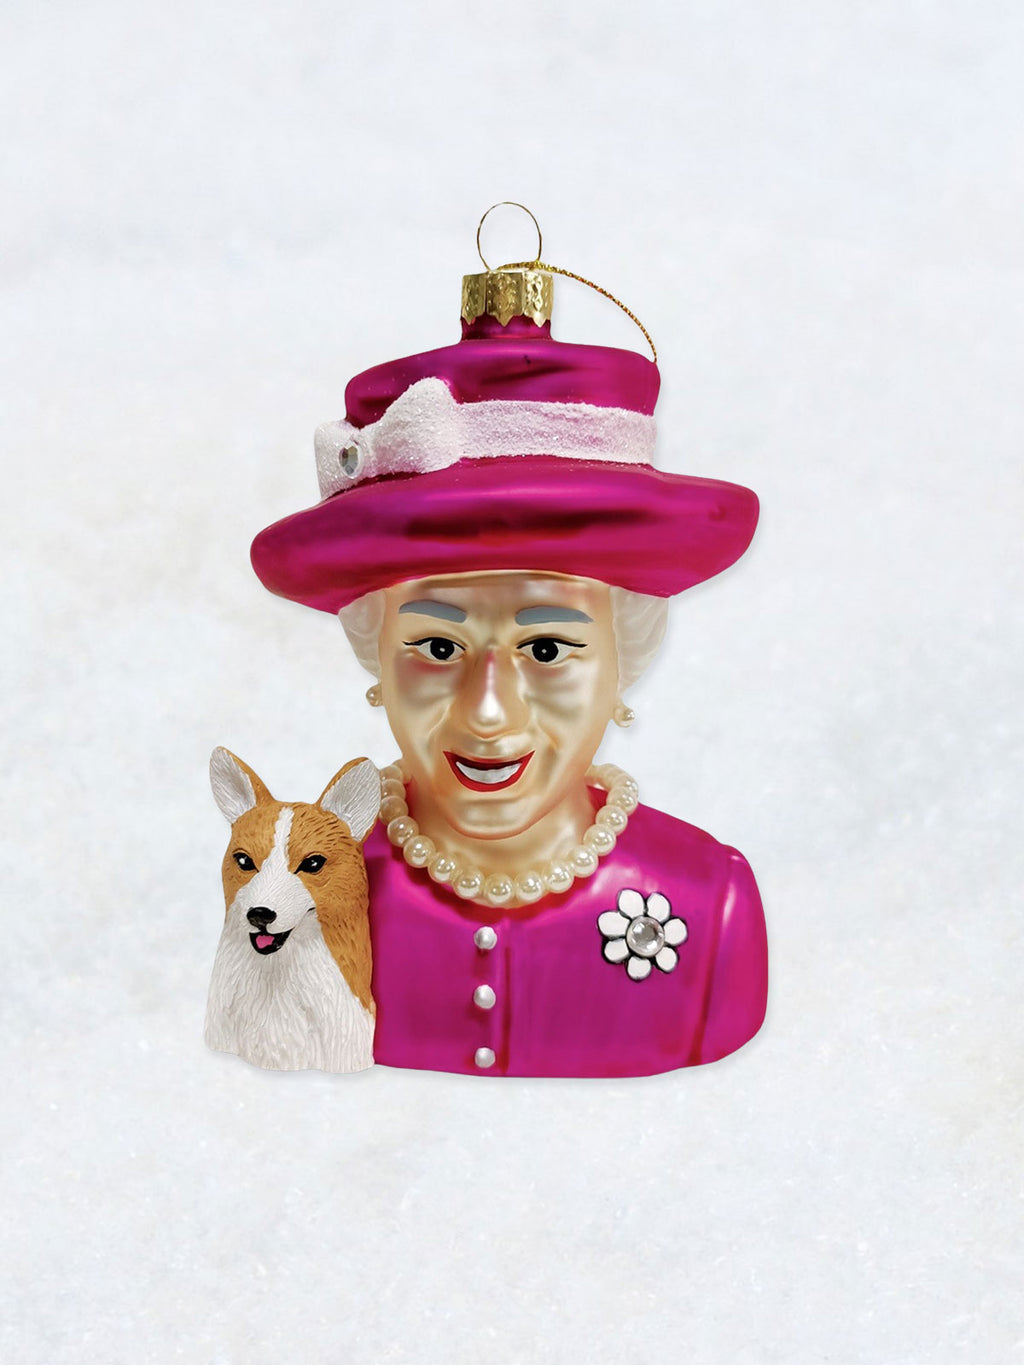 Christmas Ornament - Queen Elizabeth II